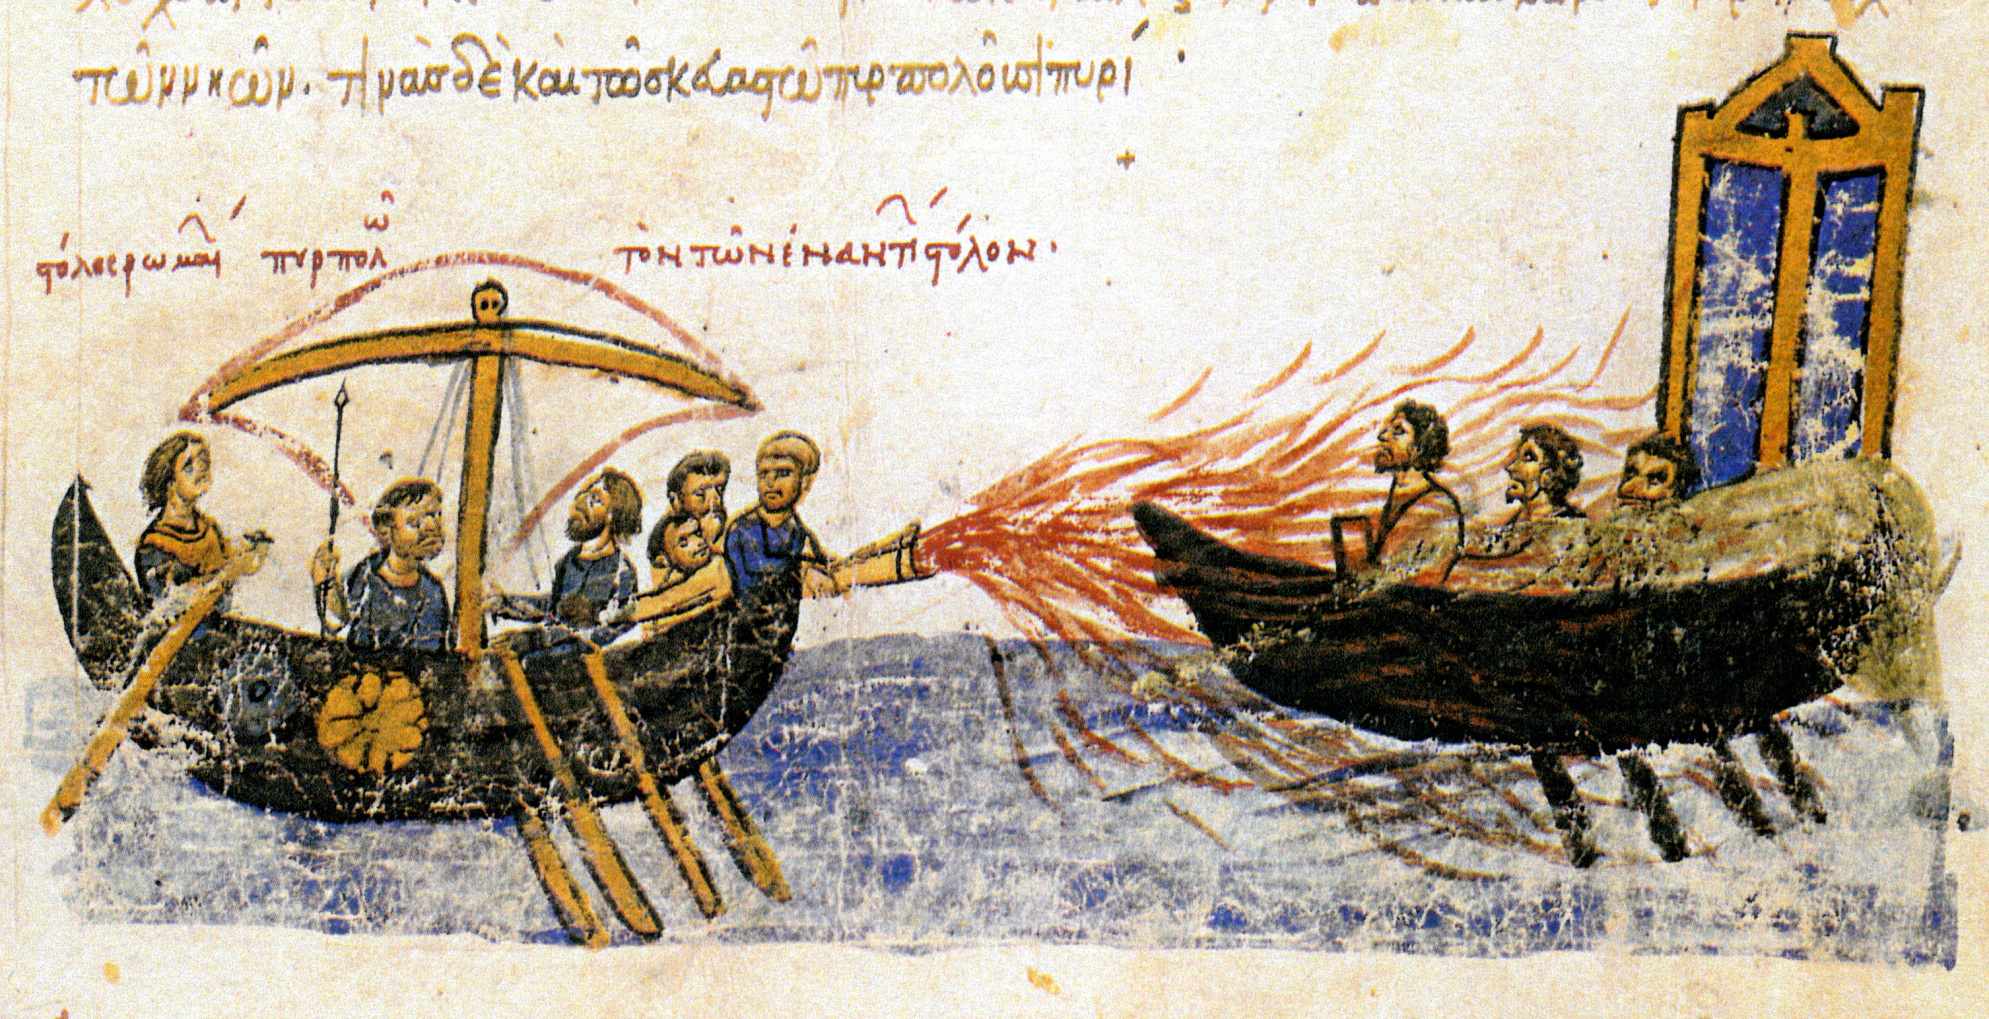 "Rimsko ladjevje požge nasprotno ladjevje" – Bizantinska ladja, ki uporablja grški ogenj proti ladji upornika Tomaža Slovana, 821. Ilustracija iz 12. stoletja iz madridskih Skylitzes.